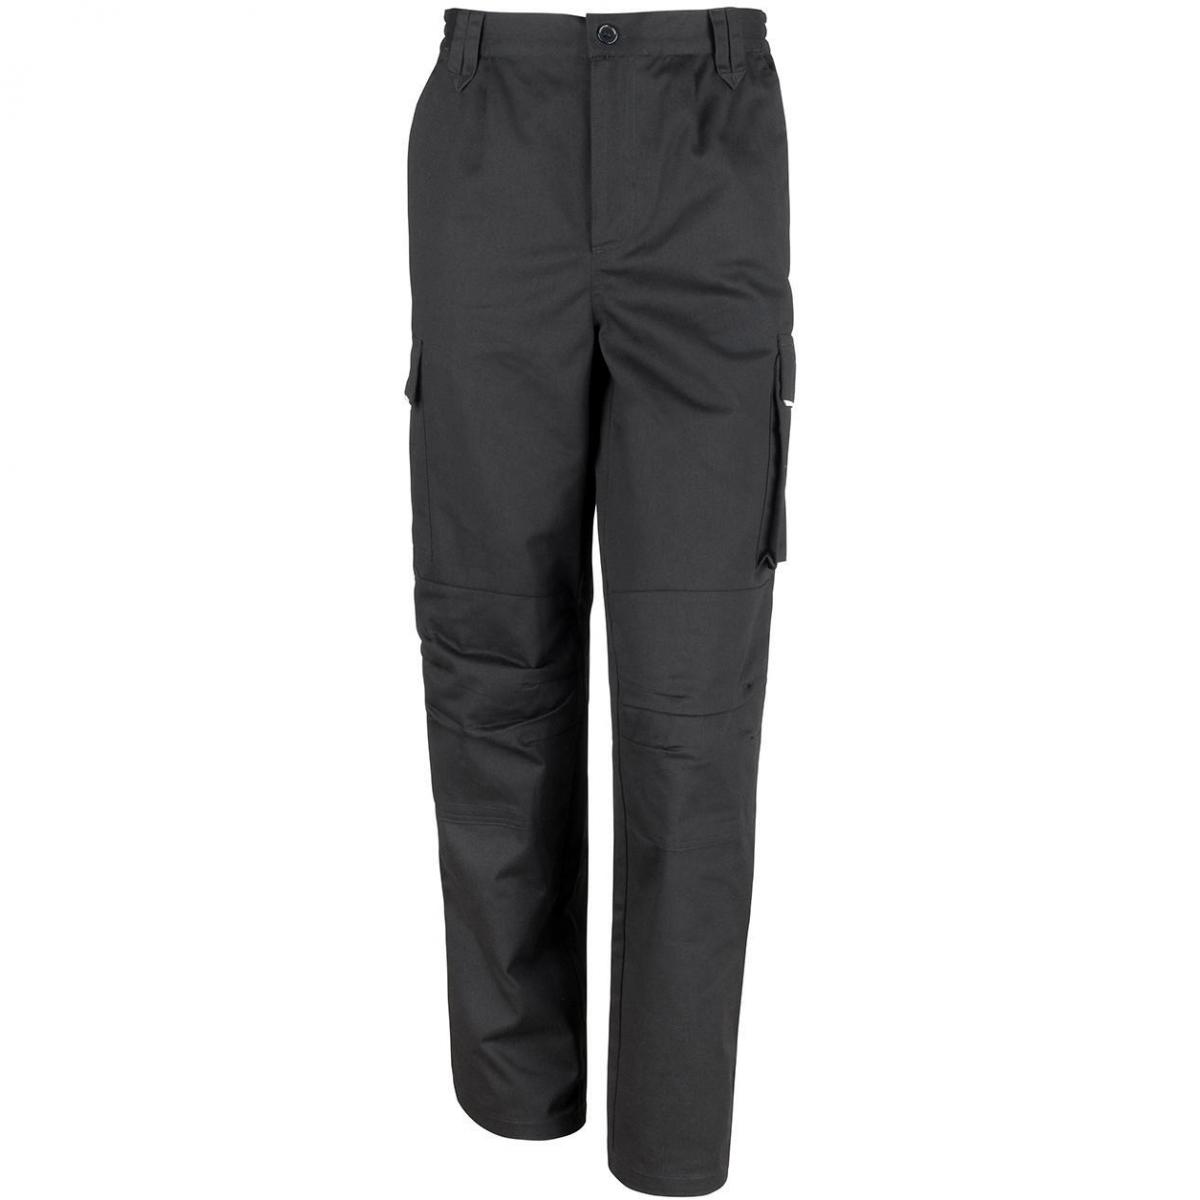 Hersteller: Result WORK-GUARD Herstellernummer: R308F Artikelbezeichnung: Women's Action Trousers Kniepolstertaschen Farbe: Black